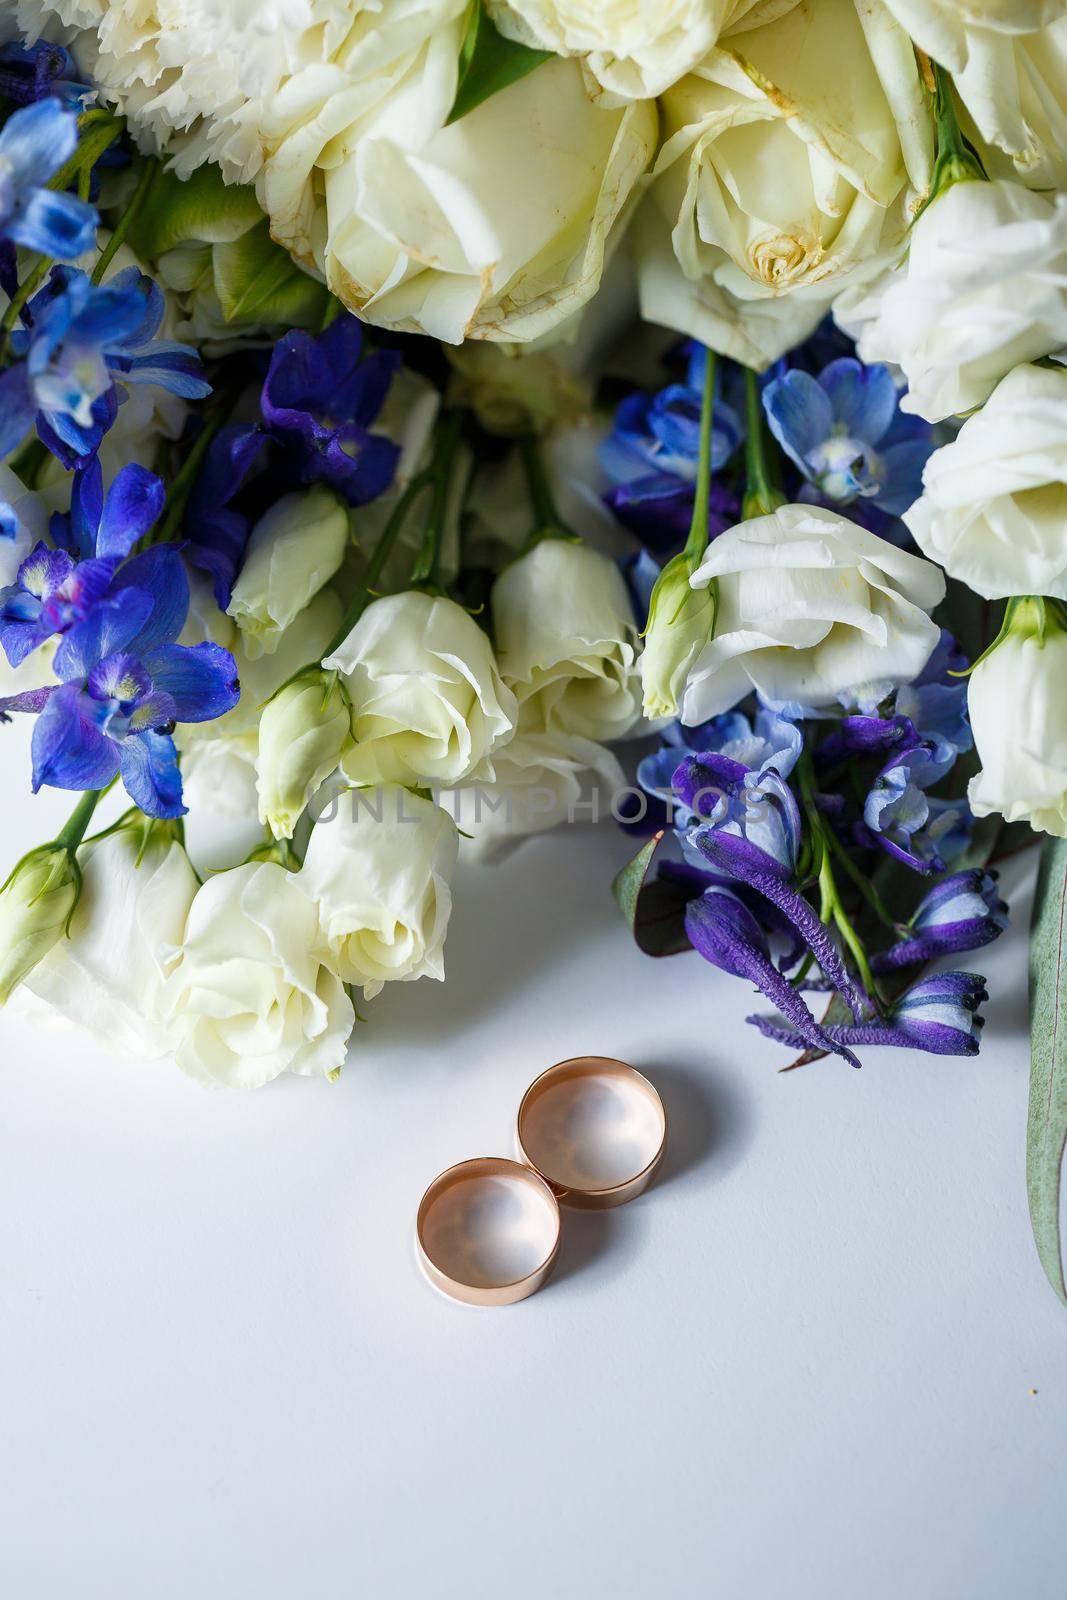 Wedding theme, beautiful wedding rings, bridal bouquet by Dmitrytph